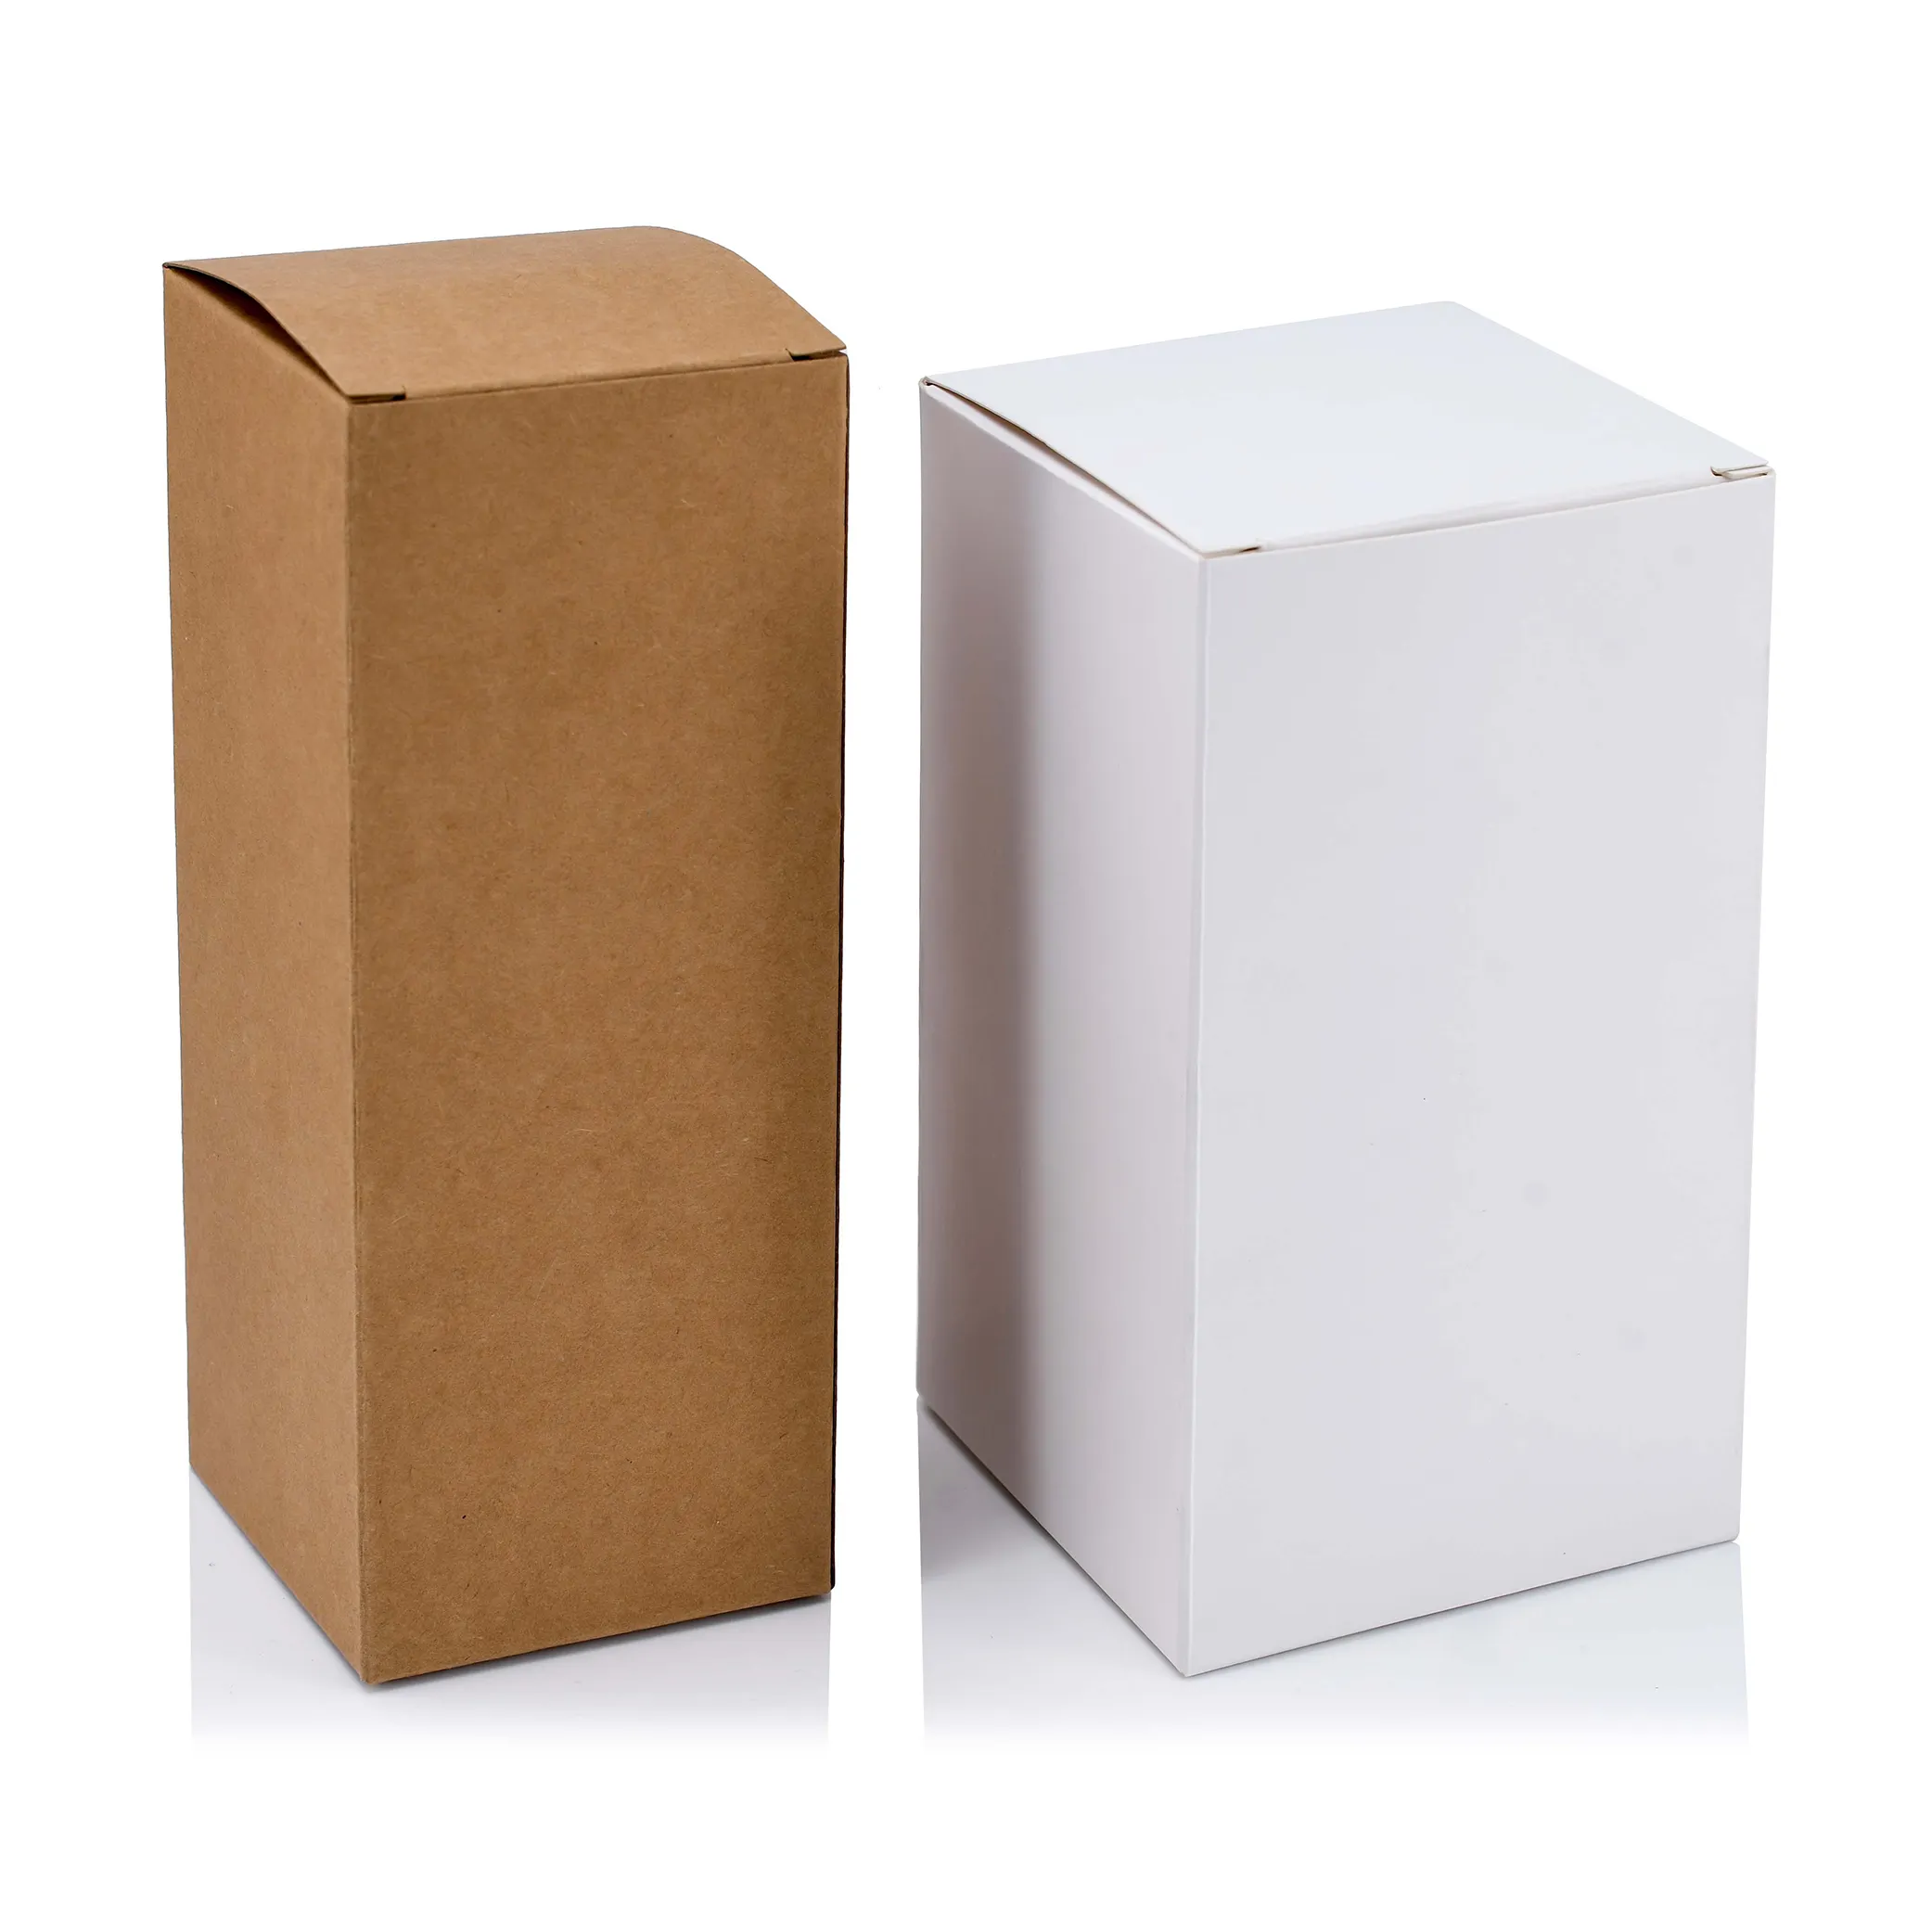 재고 도매 primry 흰색 방수 종이 포장 상자가 있습니다